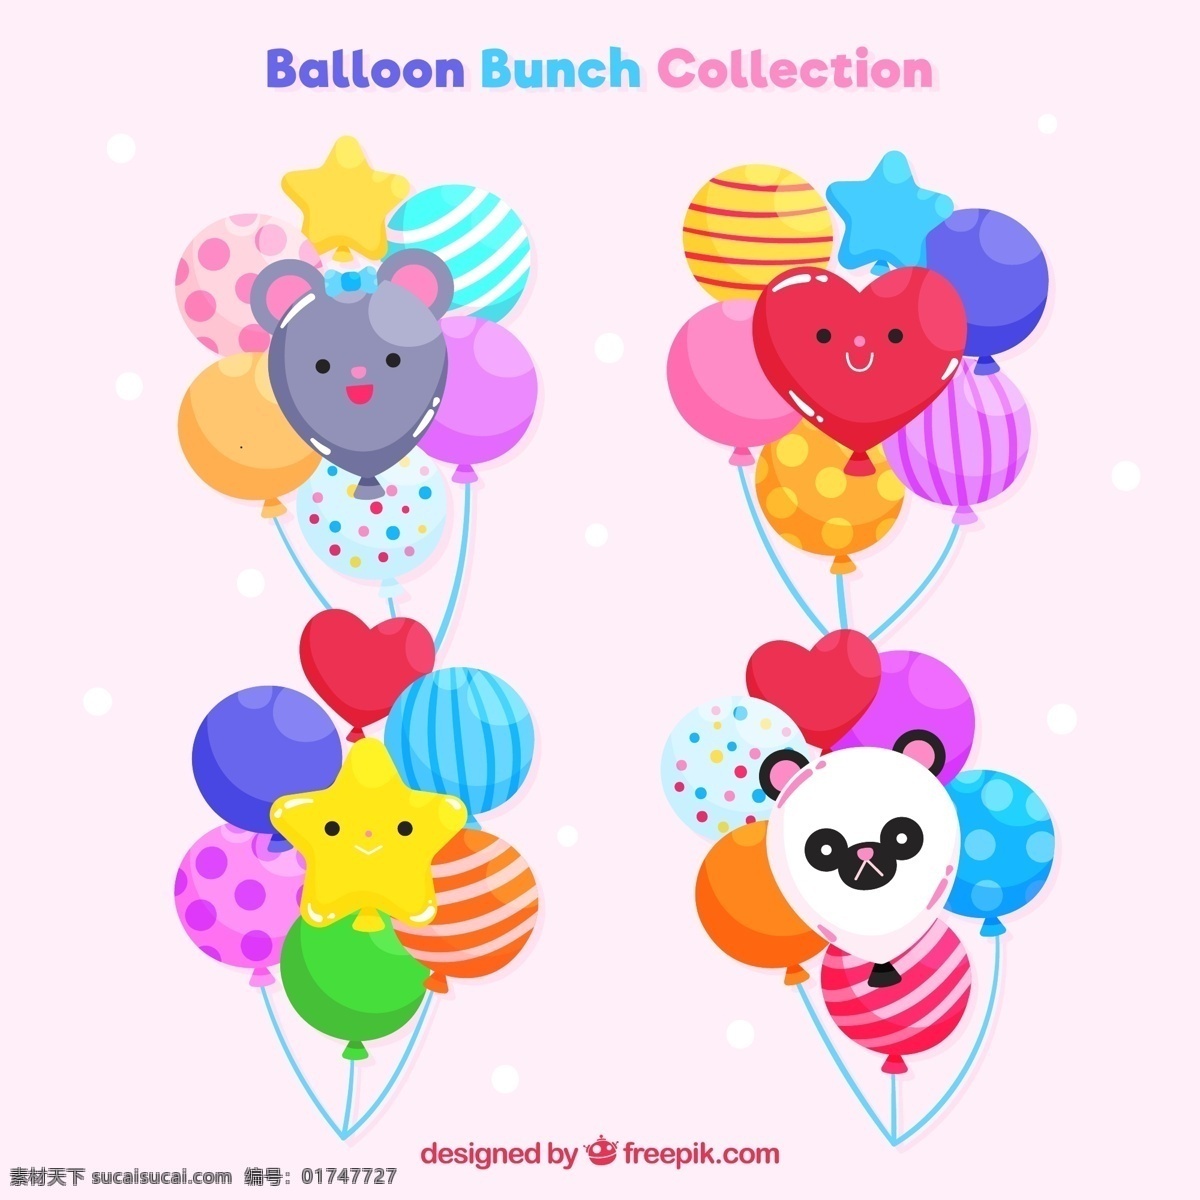 款 卡通 表情 节日 气球 束 星星 爱心 条纹 熊 水玉点 气球束 熊猫 文化艺术 节日庆祝